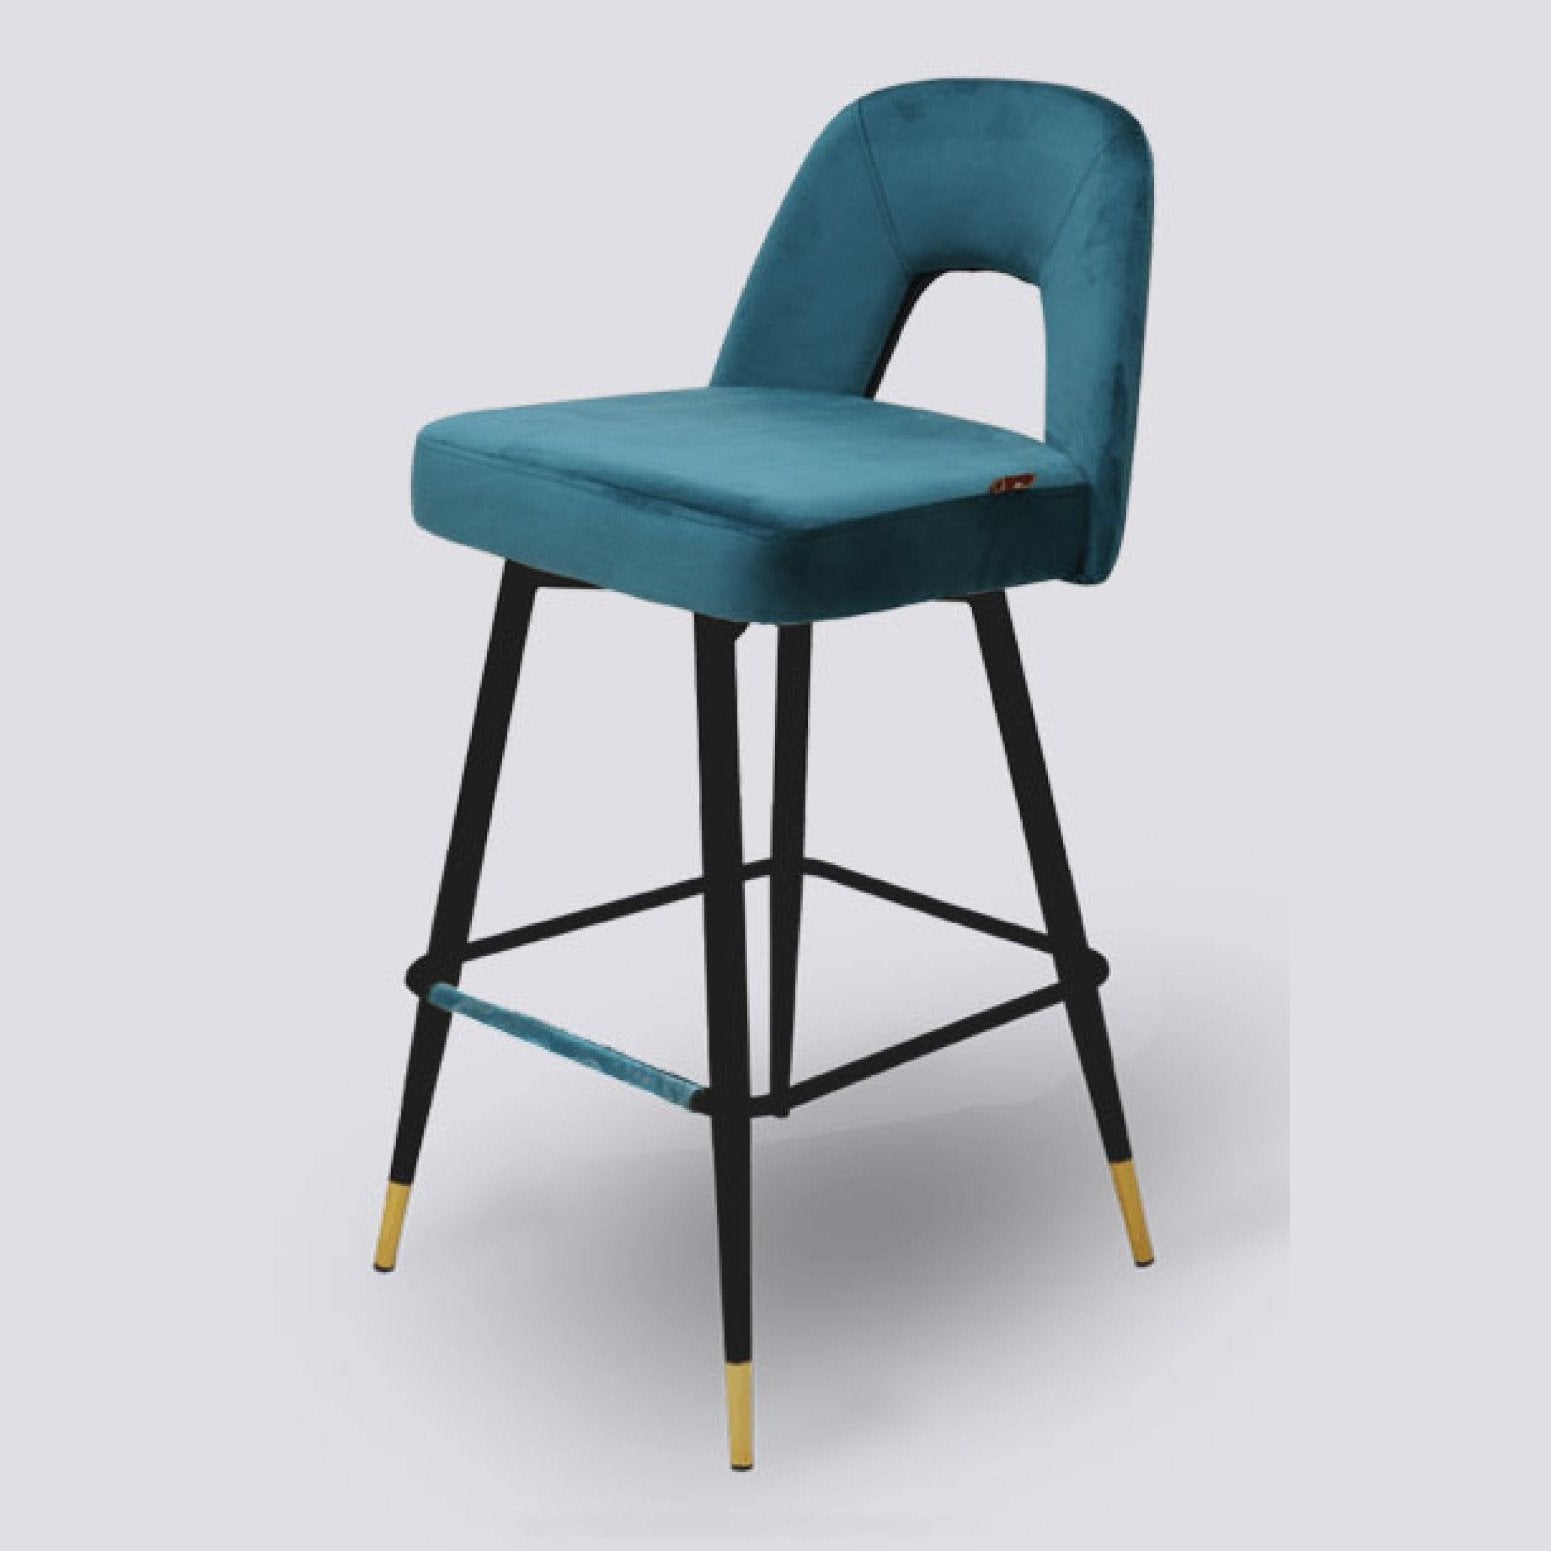 LUX-604 BAR STOOL Mobel Furniture